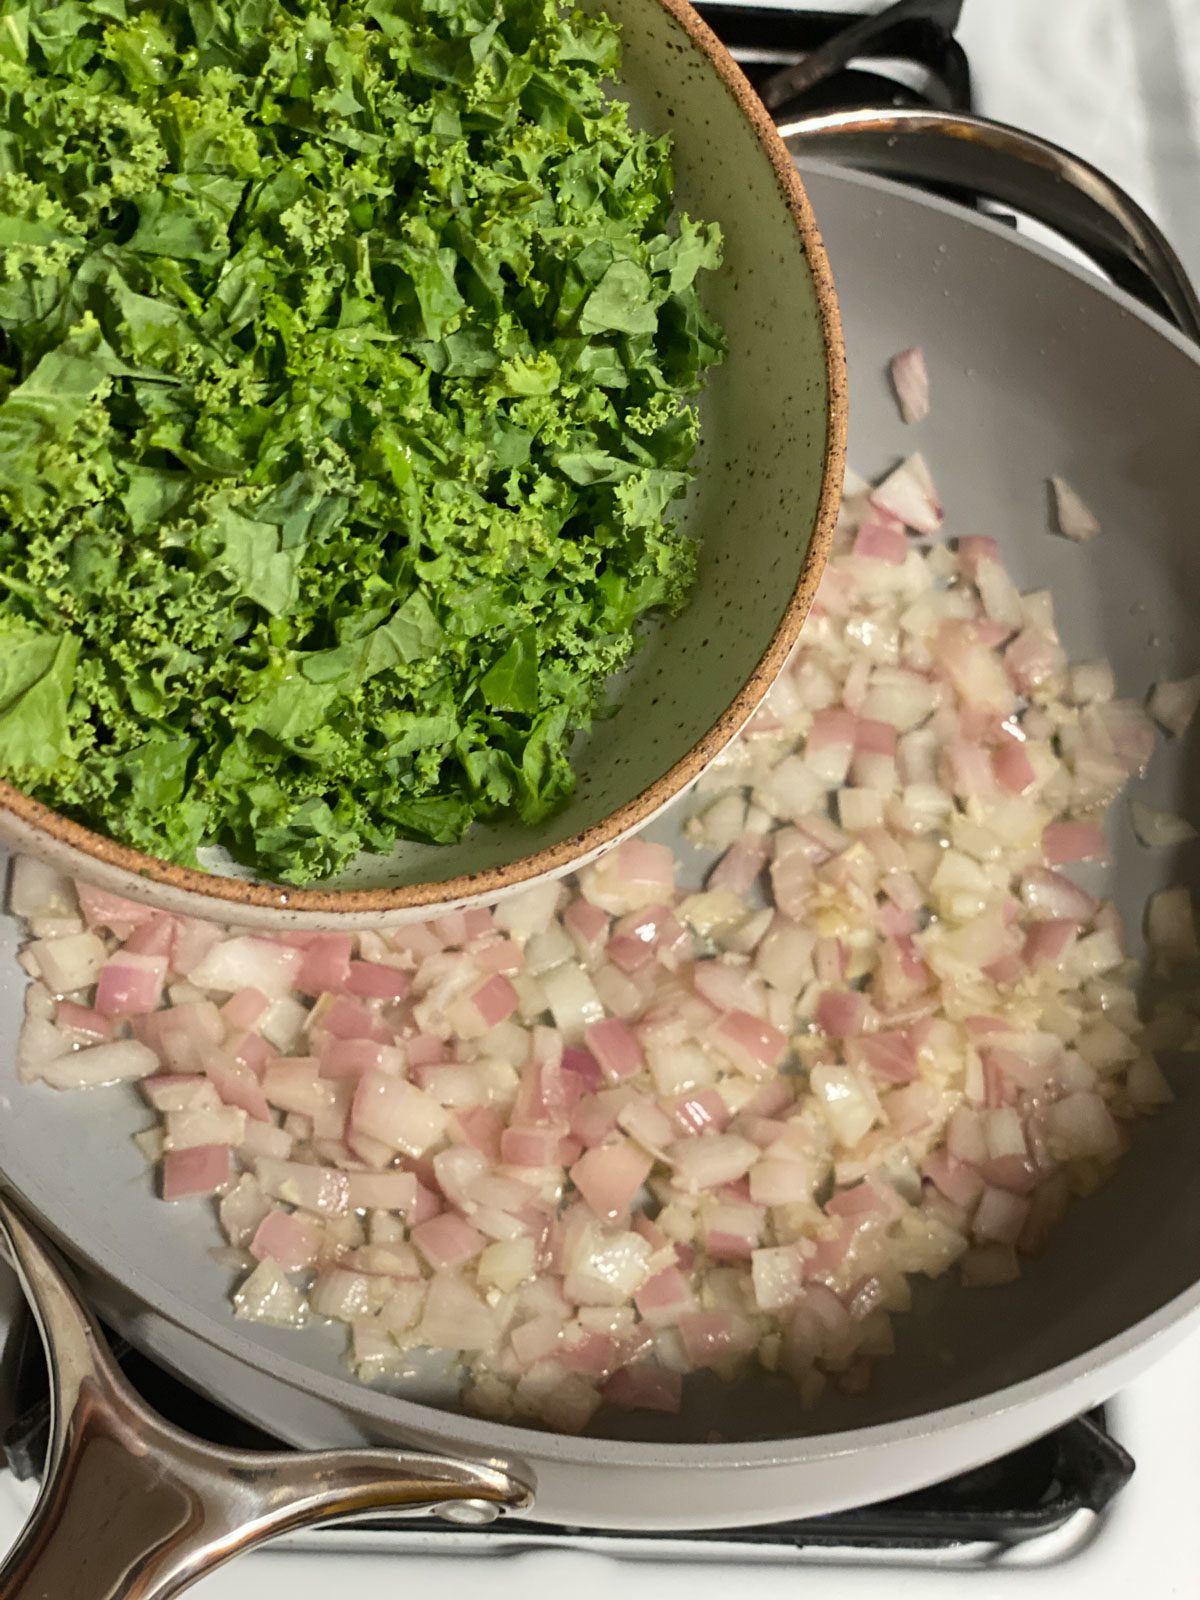 process of adding kale to pan